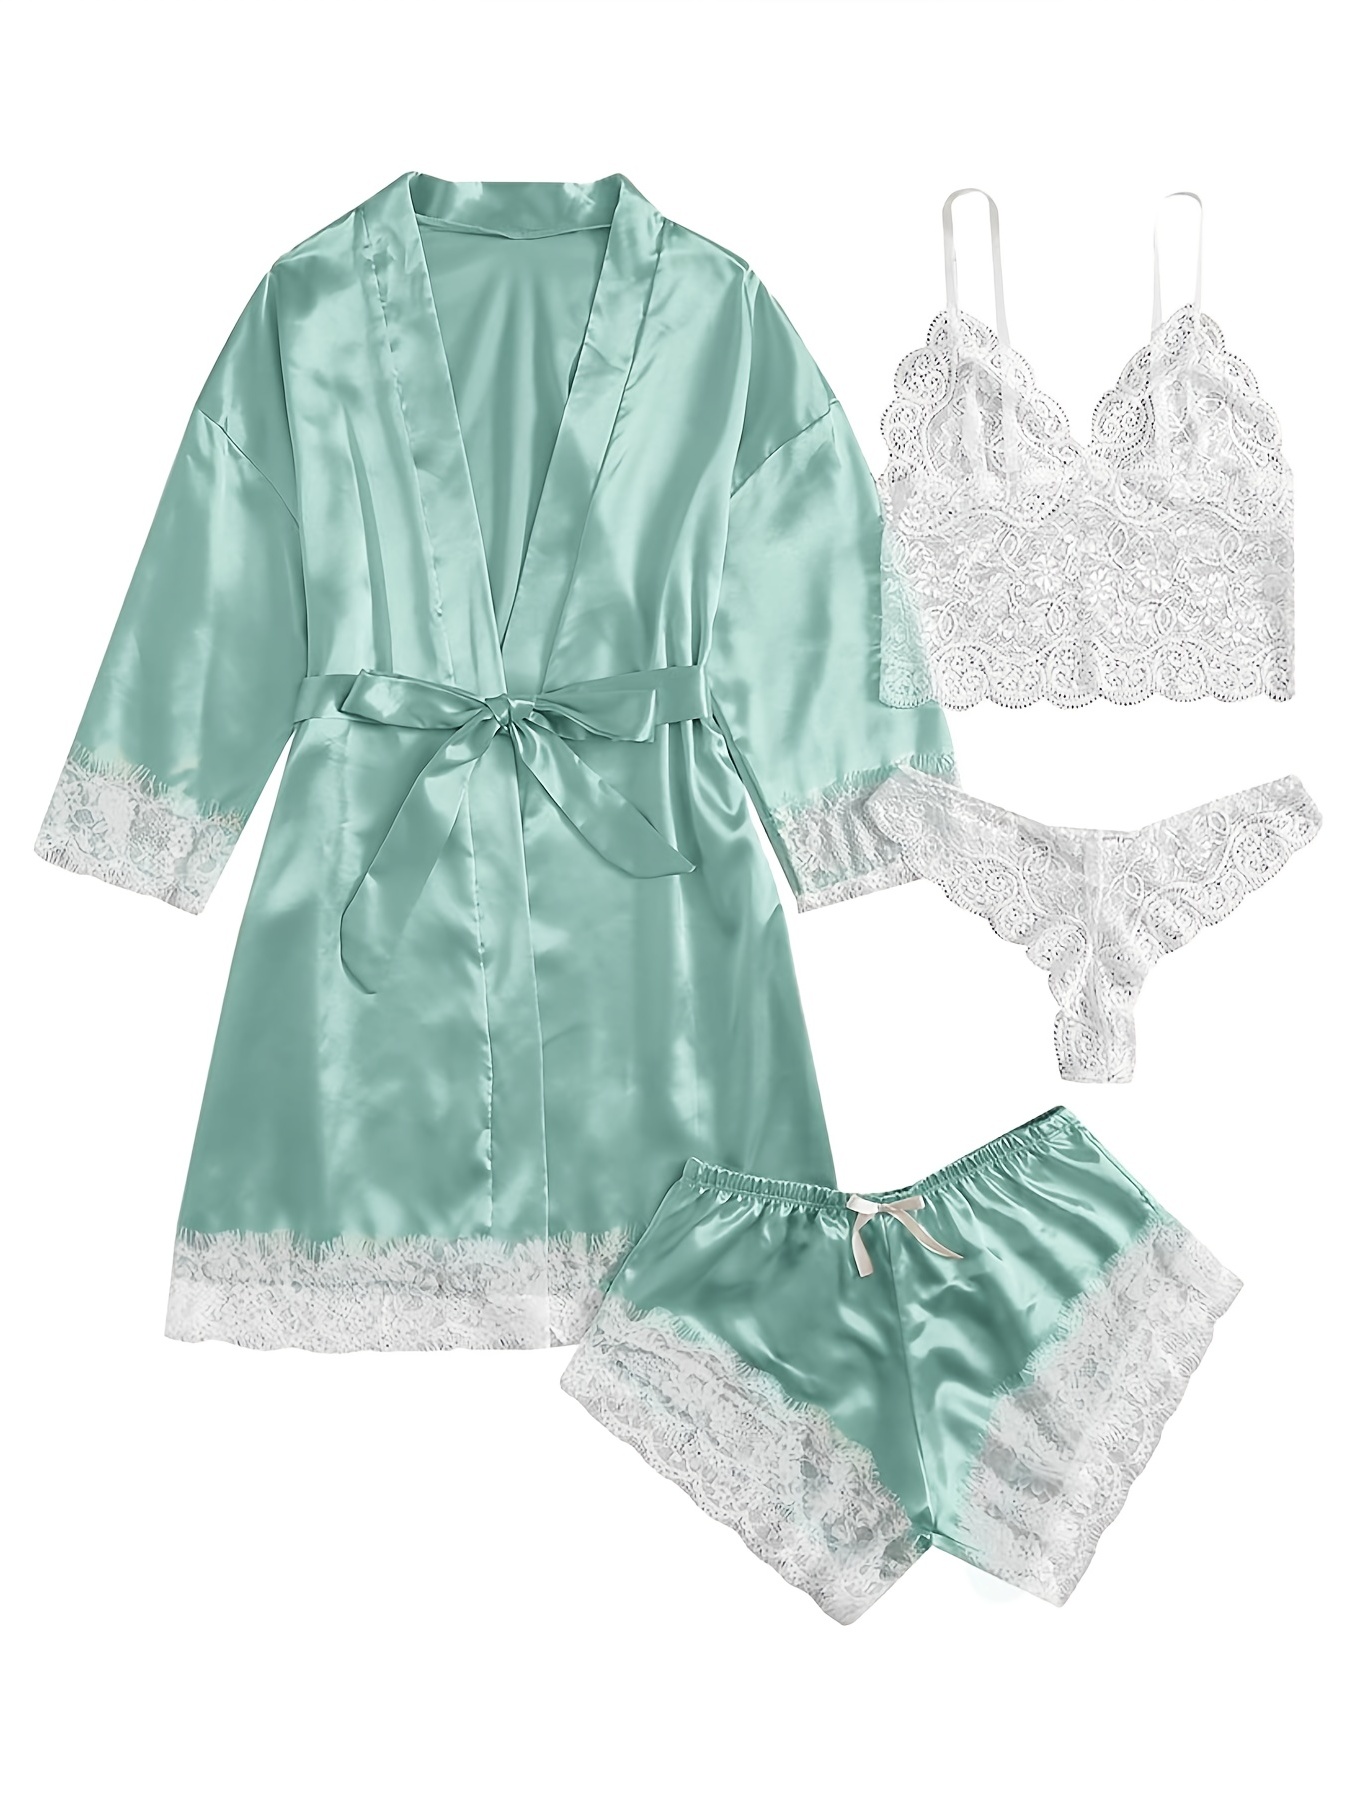 Nuevo pijama de Cami PJ Satin Lace Floral en contraste para mujer